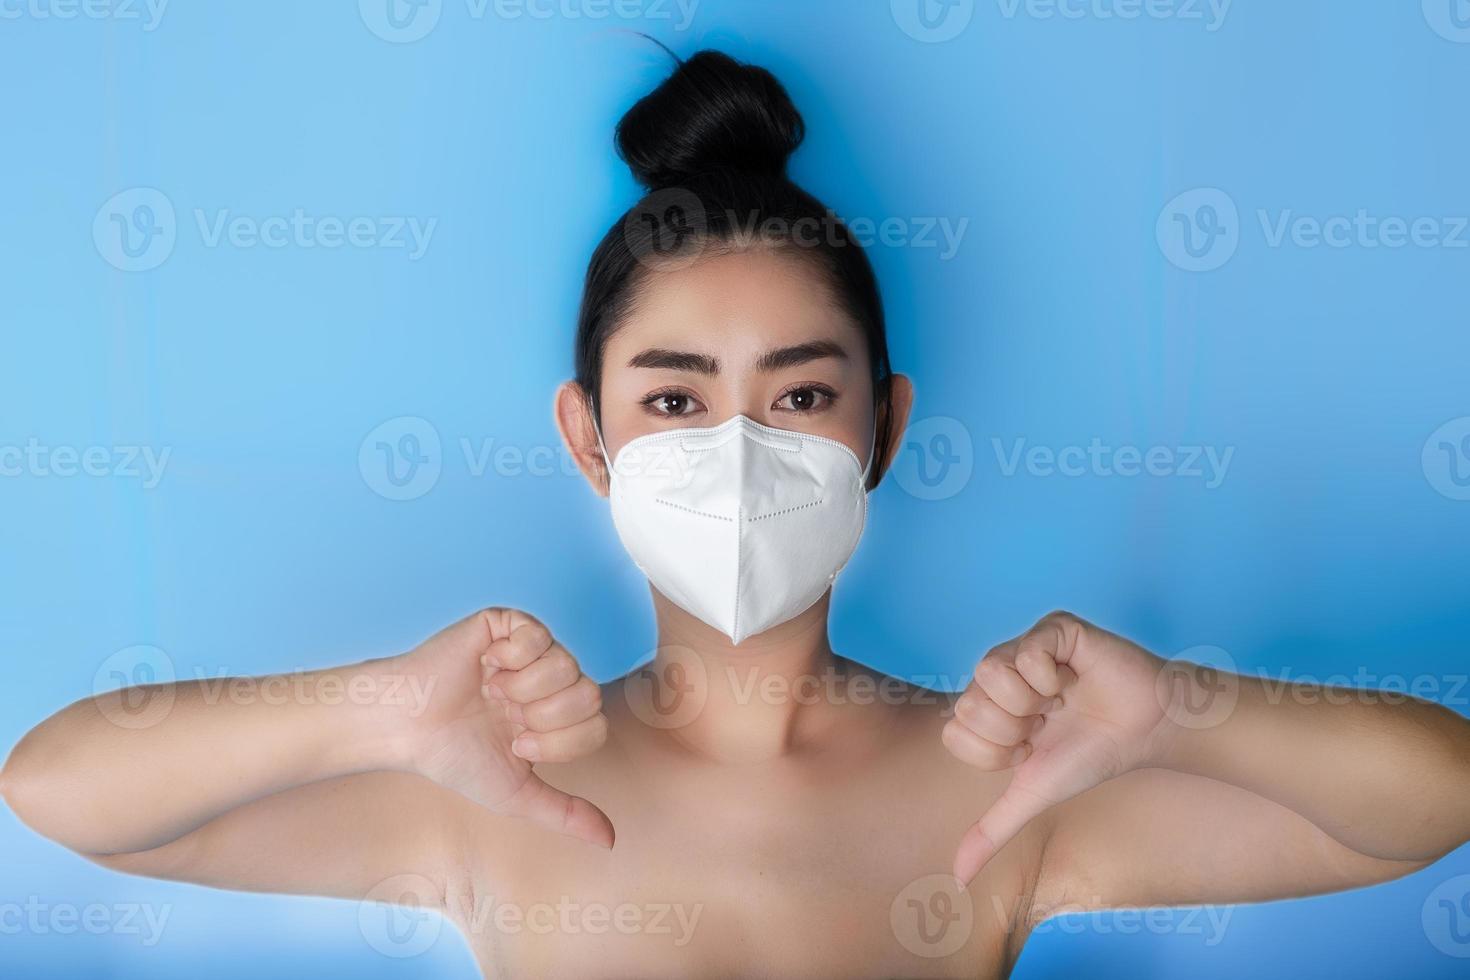 Cerca de una mujer que se pone un respirador n95 mascarilla para protegerse de enfermedades respiratorias transmitidas por el aire como la gripe covid-19 corona pm2.5 polvo y smog, pulgares femeninos hacia abajo gesto con la mano foto